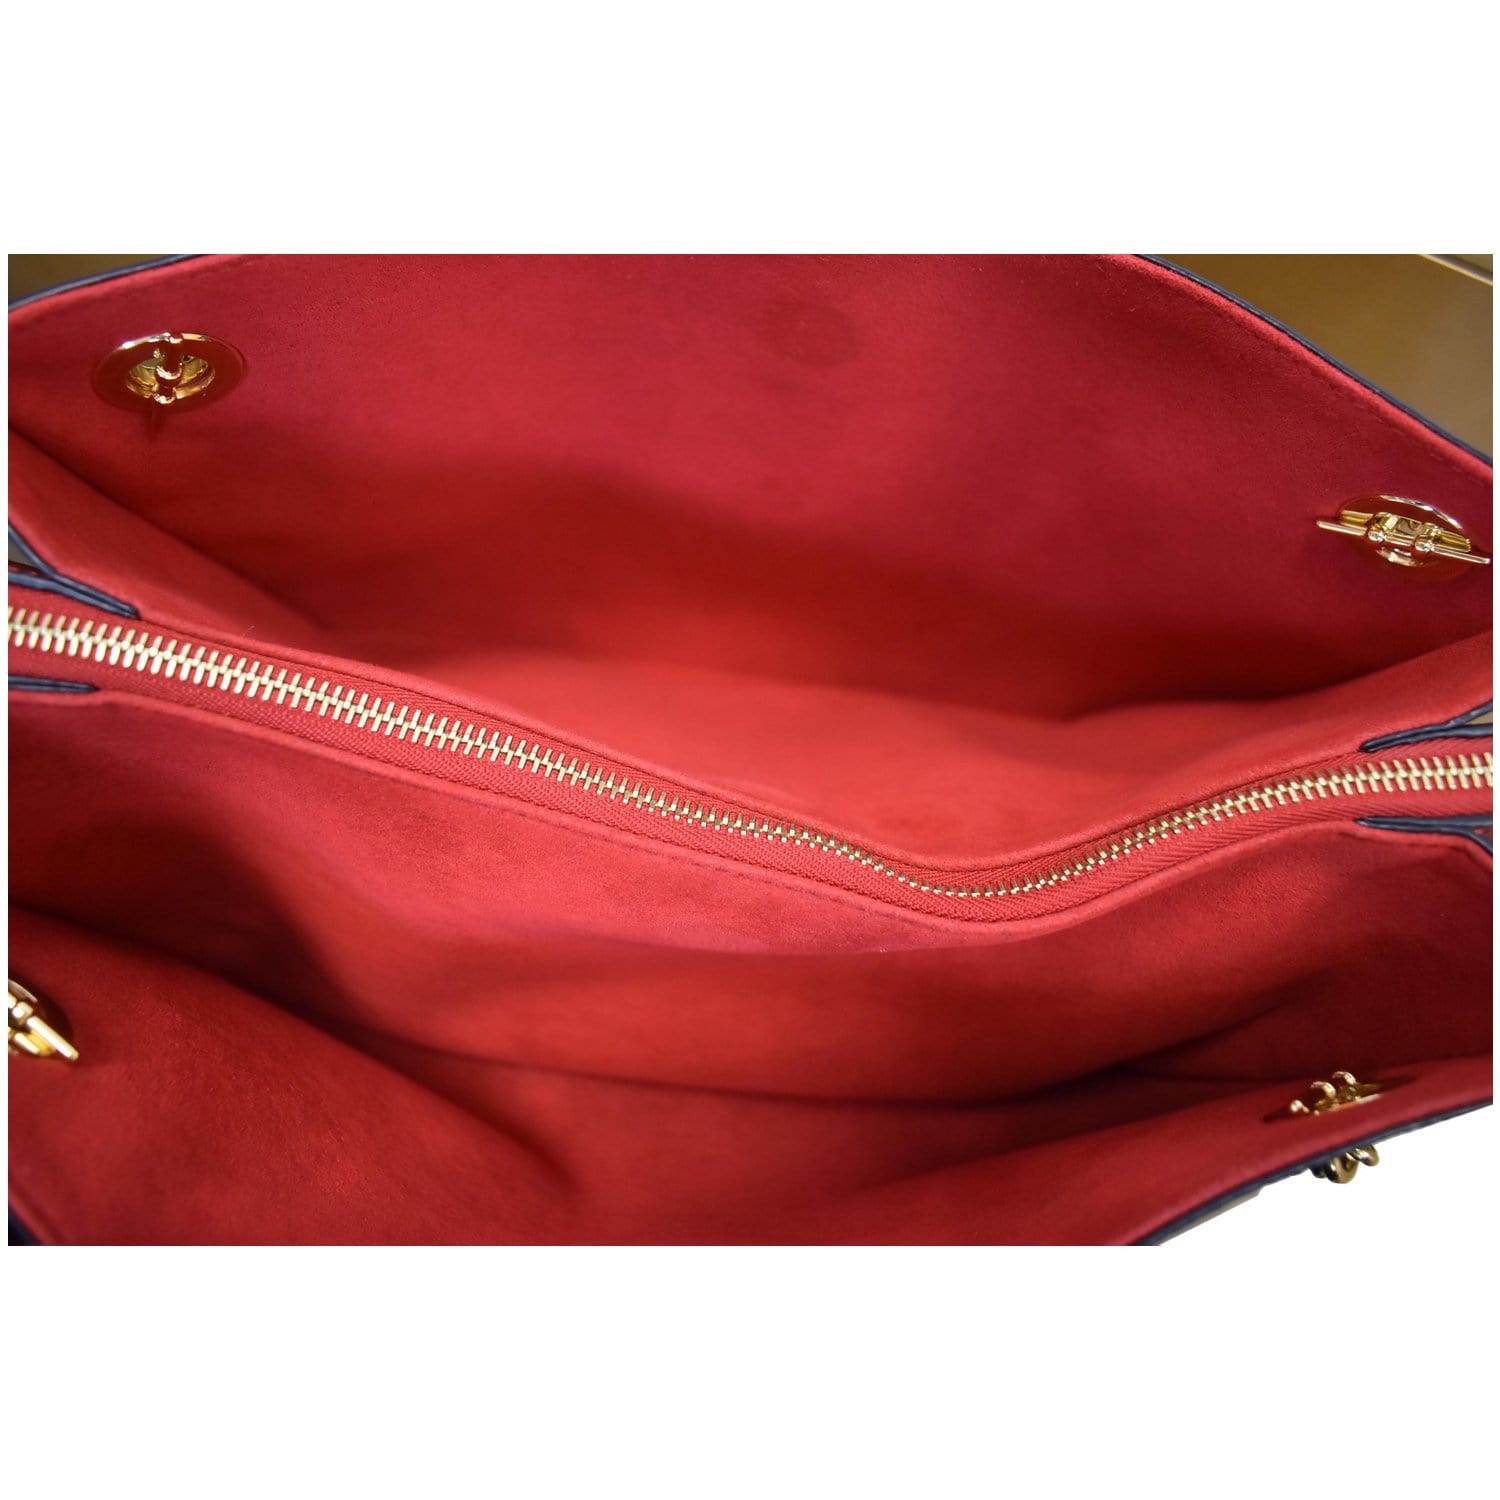 Prada, Bags, Prada Cerise Saffiano Leather Shoulder Flap Bag